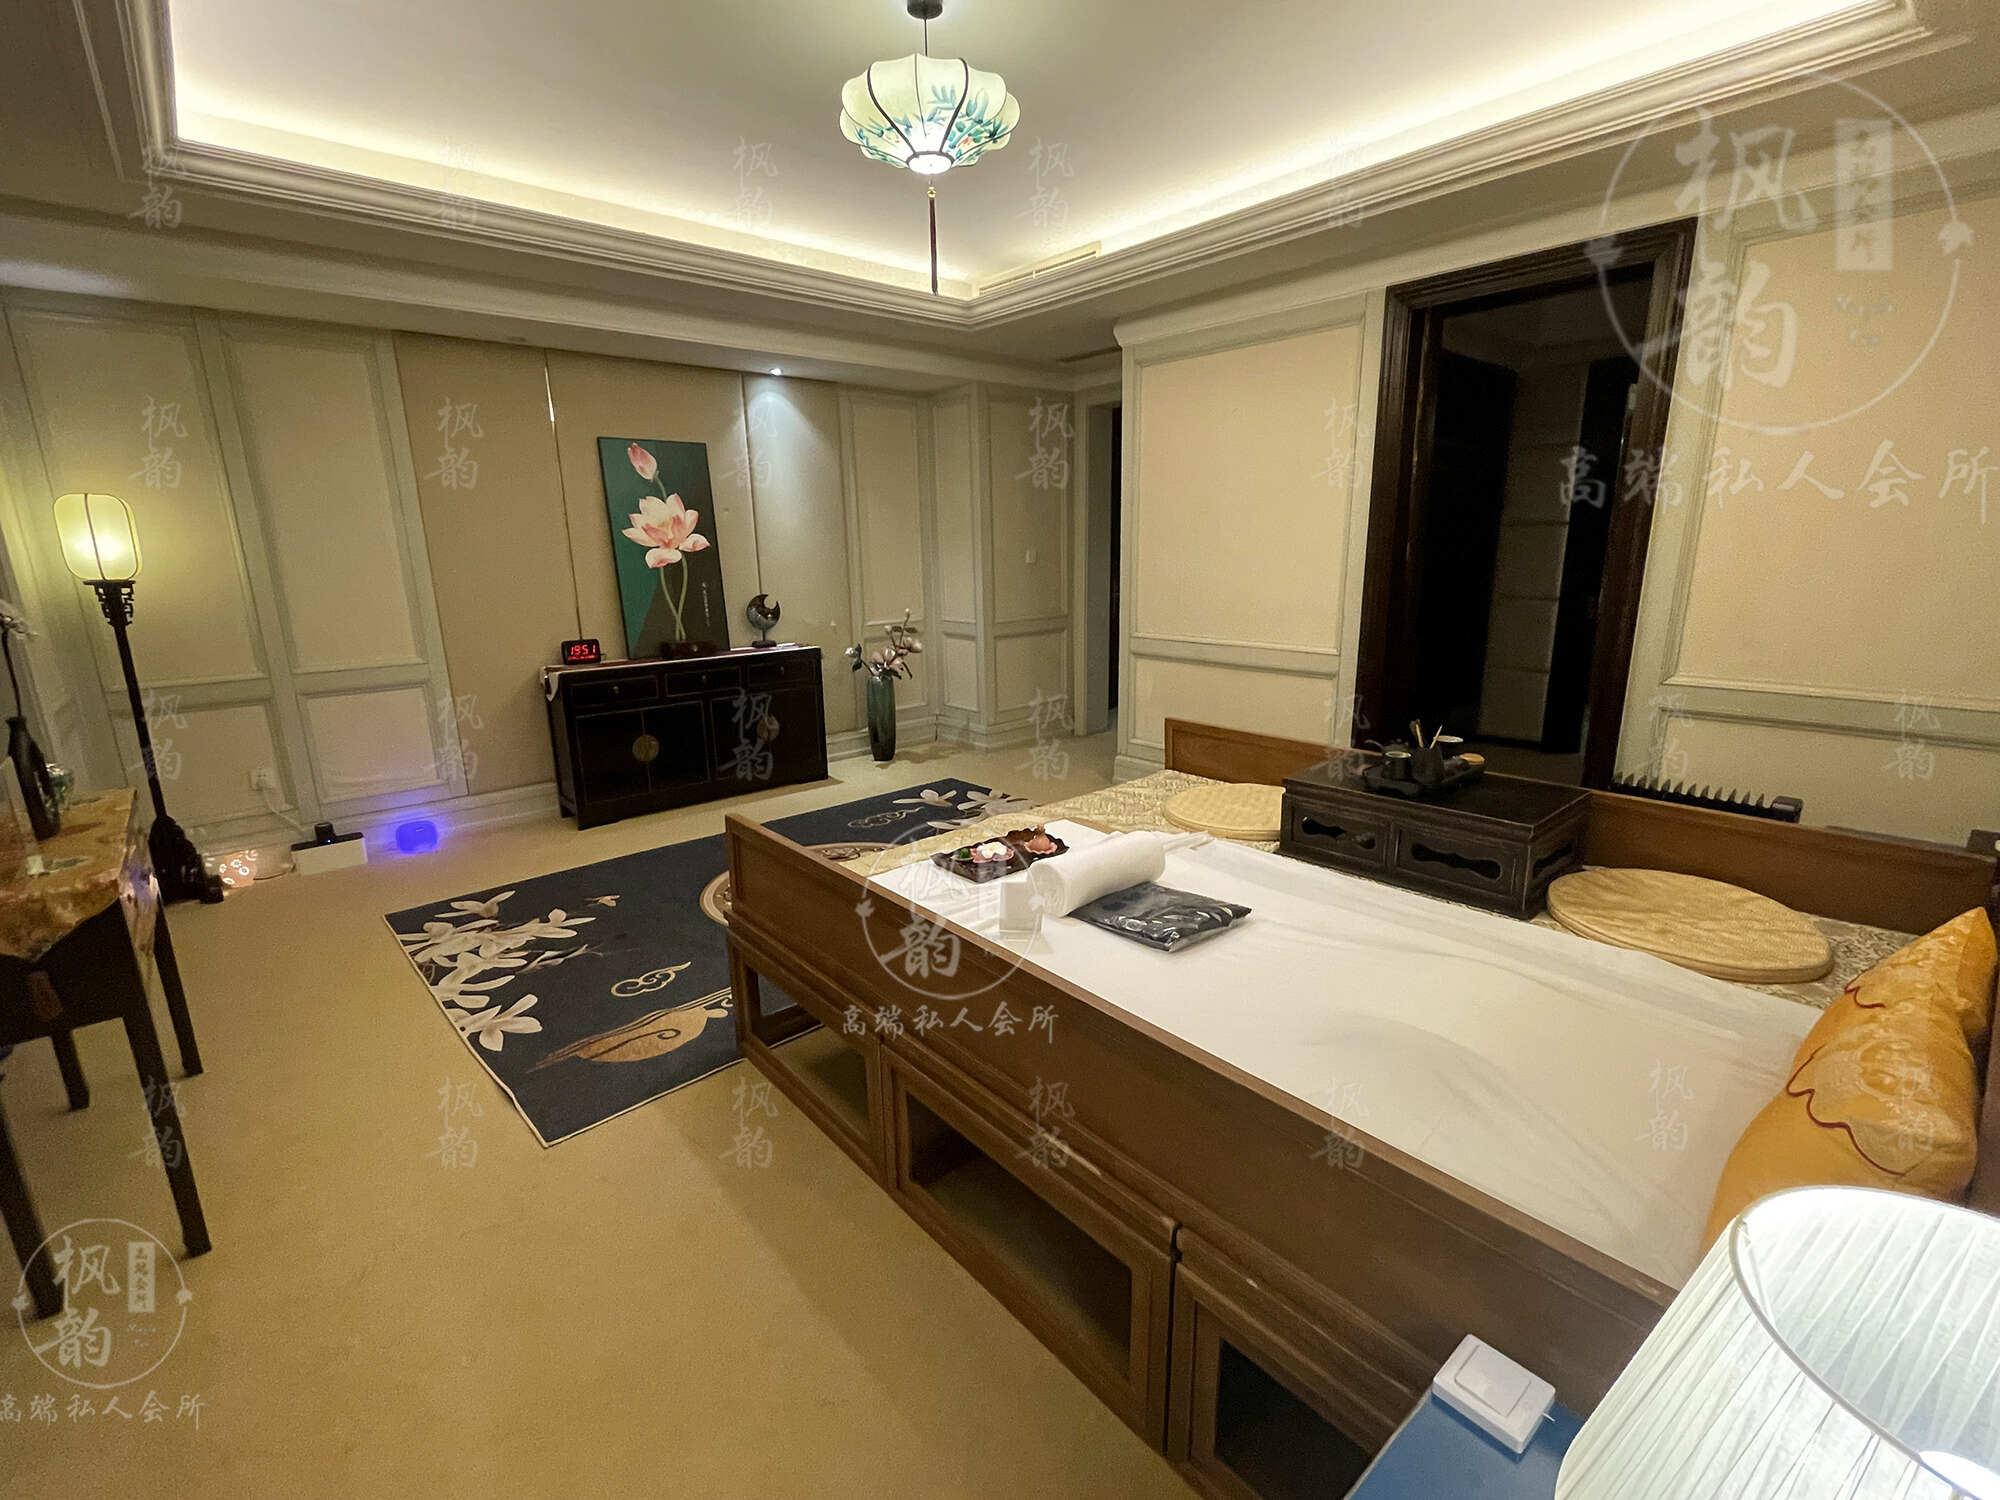 台州天津渔阳鼓楼人气优选沐足会馆房间也很干净，舒适的spa体验